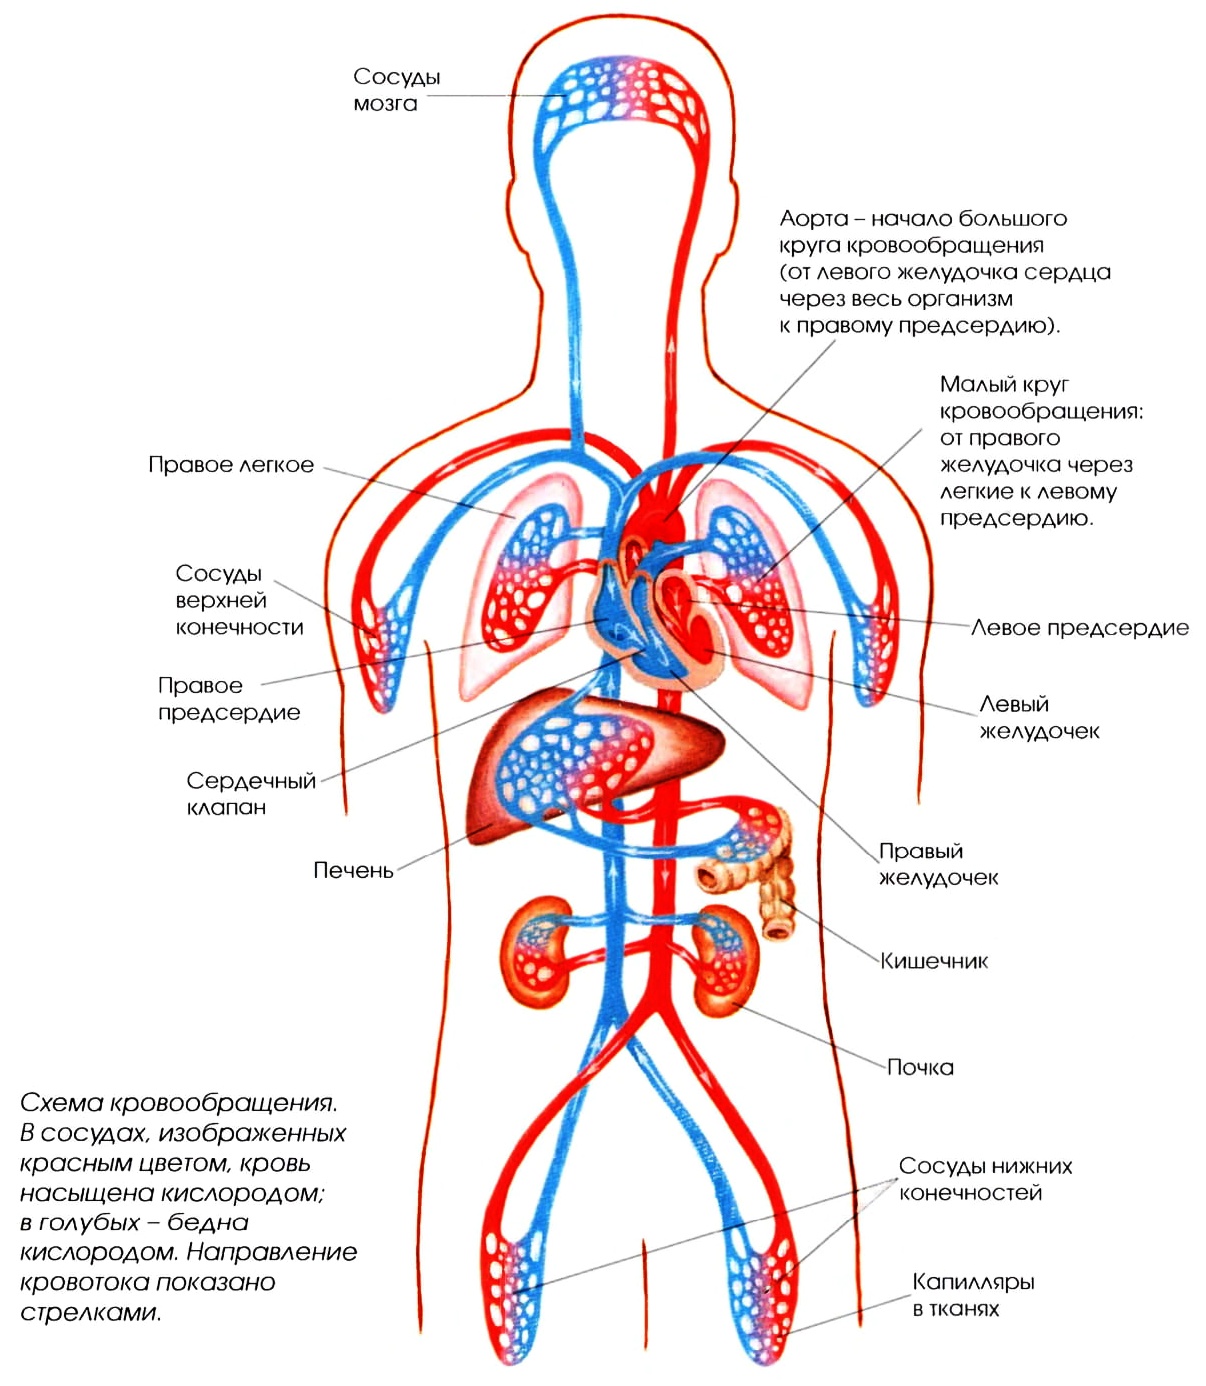 Кровеносные сосуды человека — строение, функции, роль в организме и возможные патологии